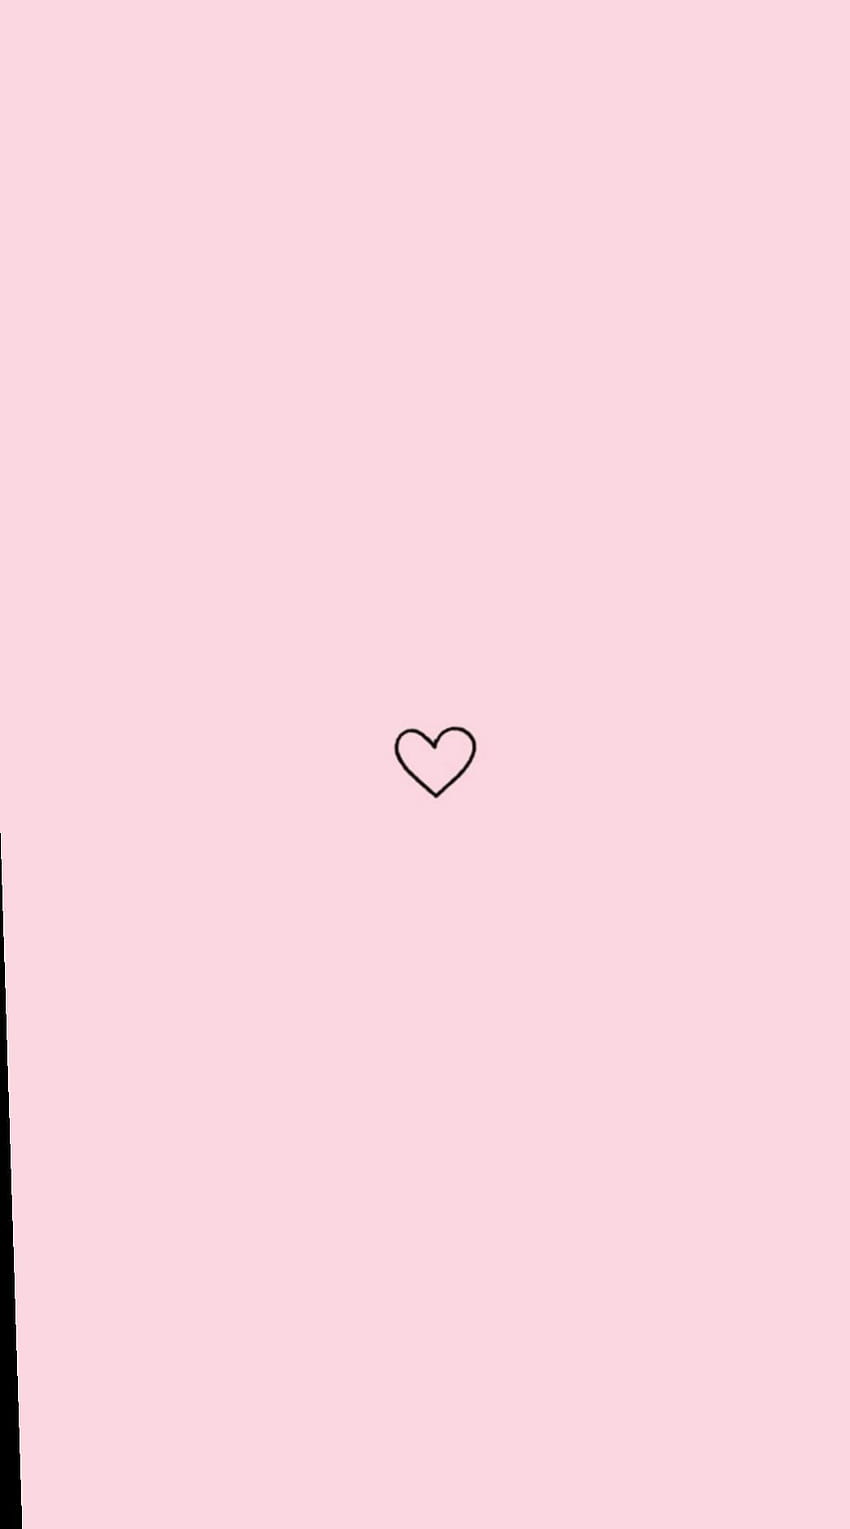 Hình nền Pink Heart Aesthetic iPhone Wallpapers - HD sẽ mang lại cho bạn những cảm xúc ngọt ngào và lãng mạn tràn đầy. Hãy để chúng phủ kín màn hình điện thoại của bạn và khiến mọi người phải trầm trồ ngưỡng mộ.